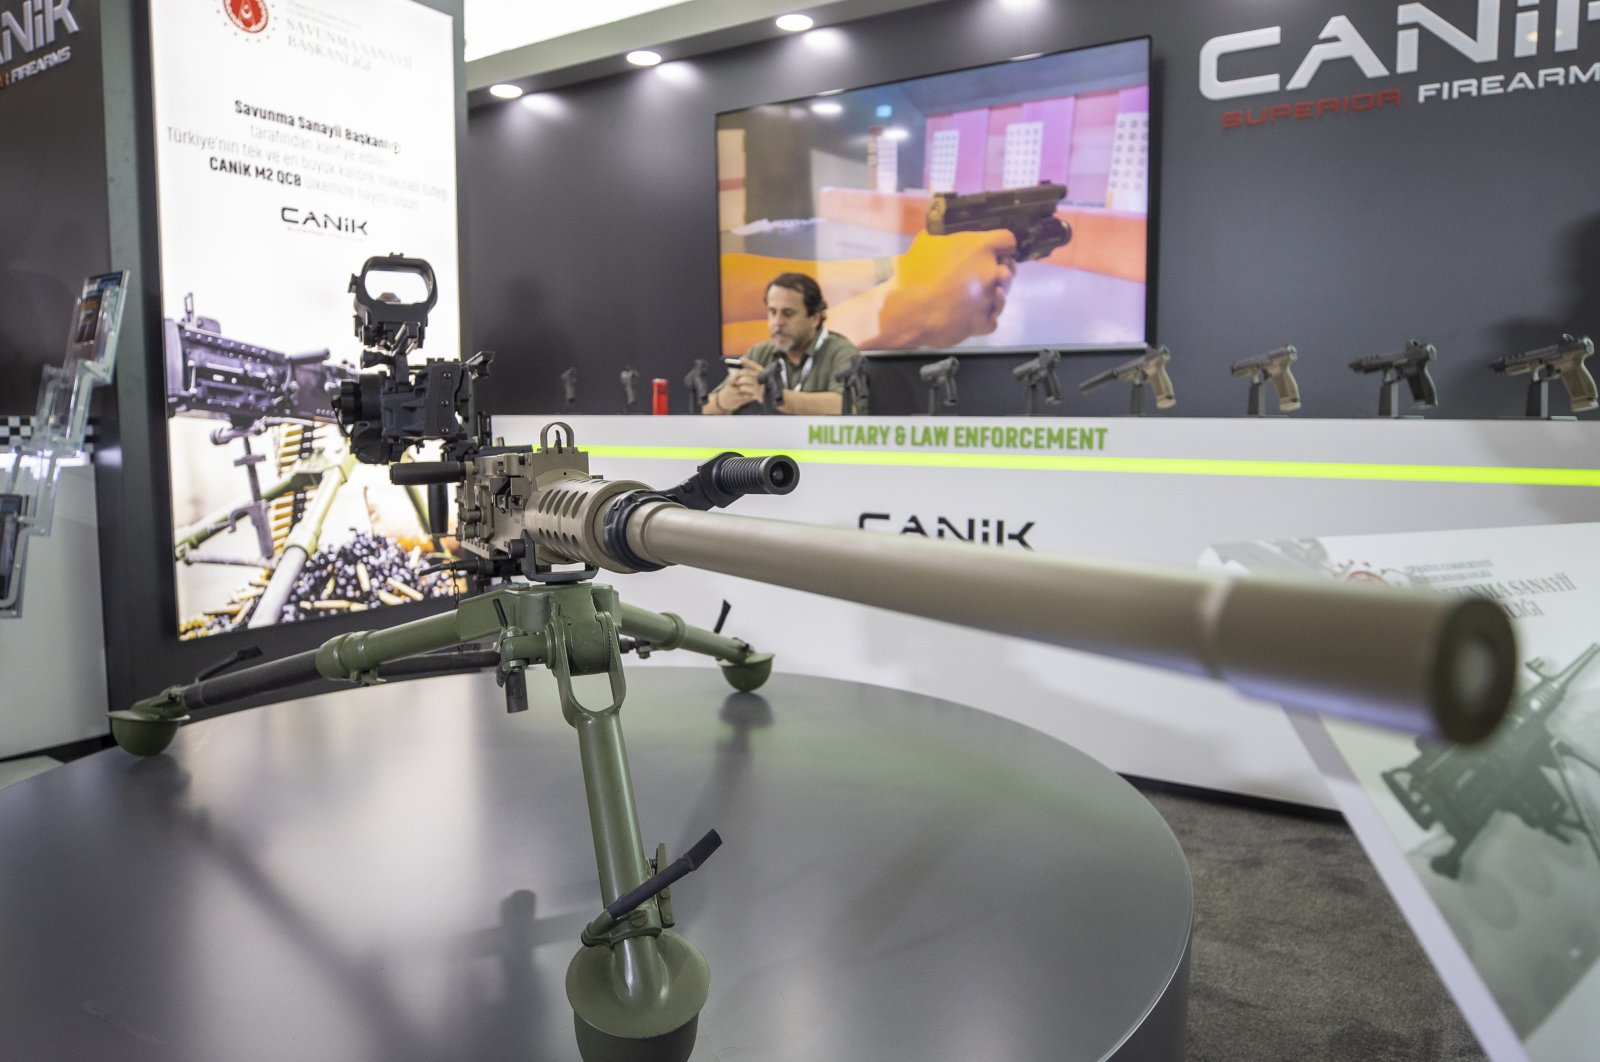 A CANiK M2 QCB heavy machine gun is showcased at SEDEC fair, Ankara, Turkey, June 30, 2022. (AA Photo)